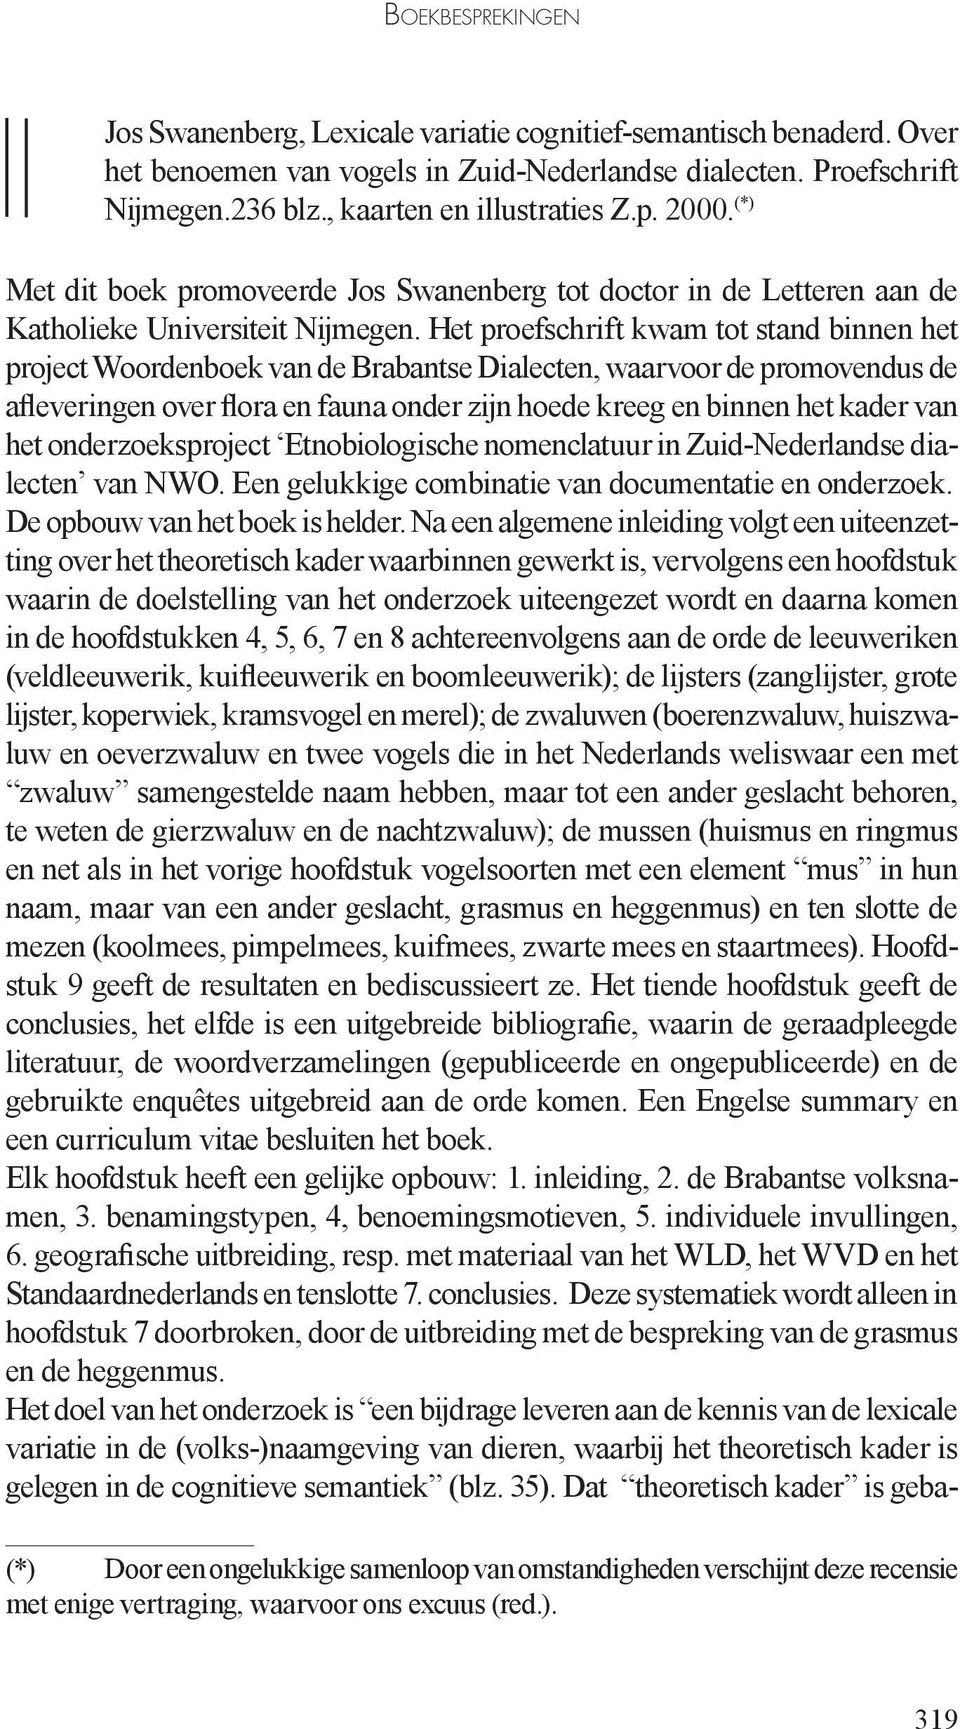 Het proefschrift kwam tot stand binnen het project Woordenboek van de Brabantse Dialecten, waarvoor de promovendus de afleveringen over flora en fauna onder zijn hoede kreeg en binnen het kader van